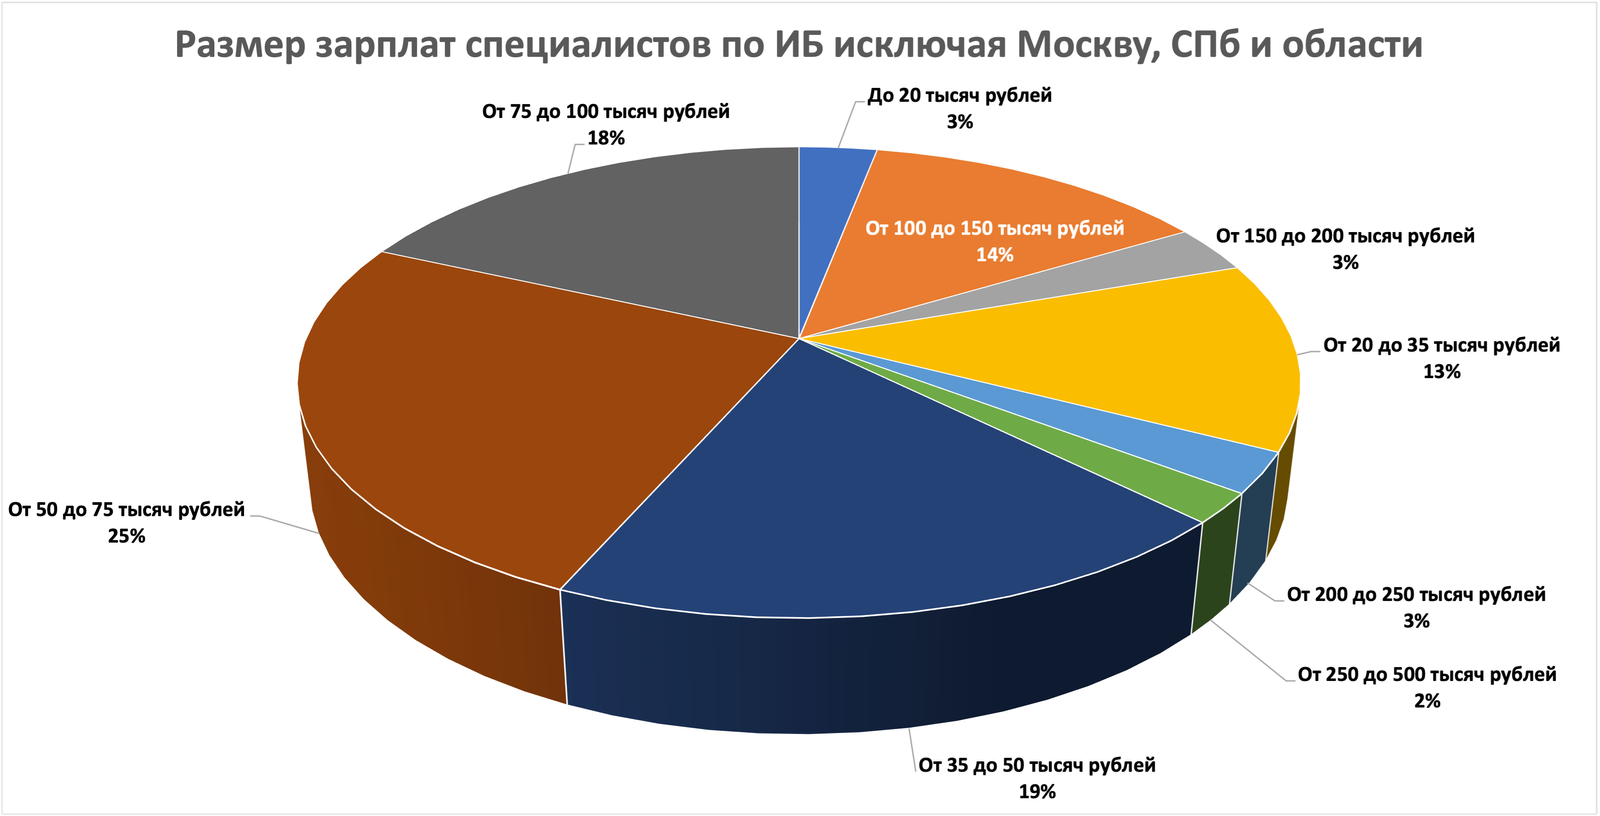 Зарплата специалистов по ИБ, исключая Москву, Санкт-Петербург и области